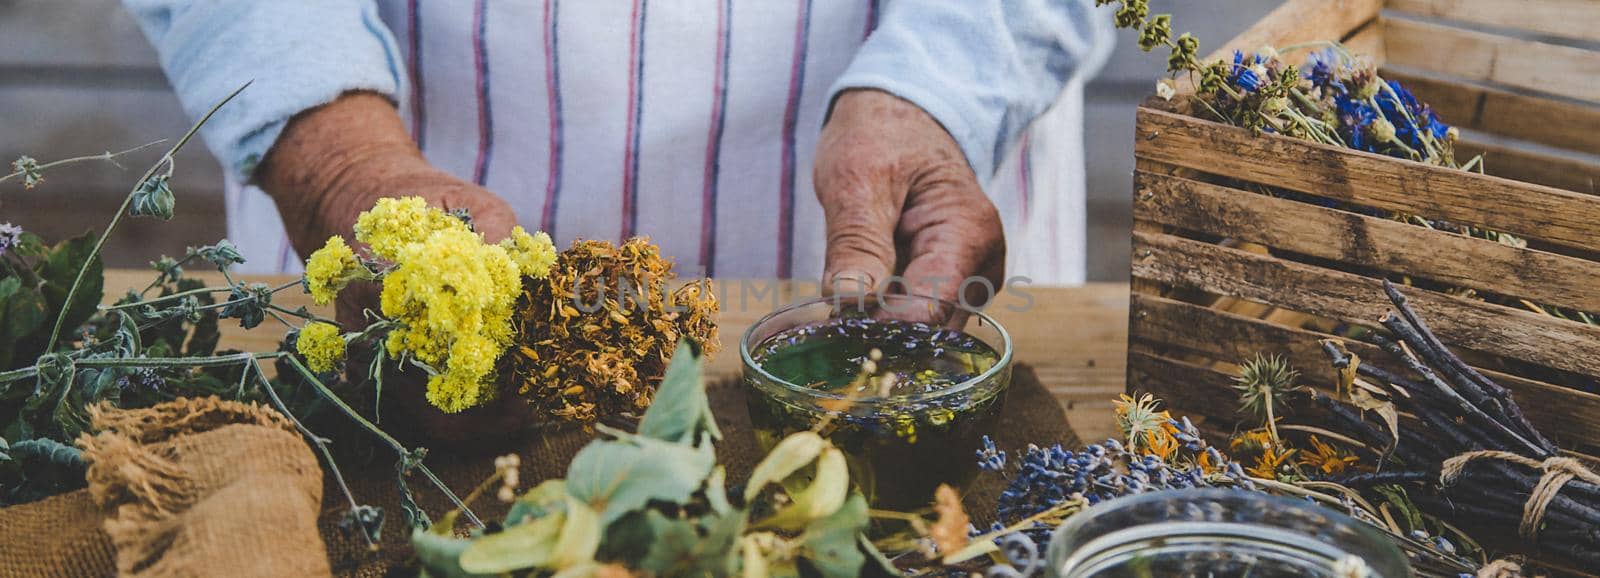 Grandmother makes tea with medicinal herbs. Selective focus. Nature.